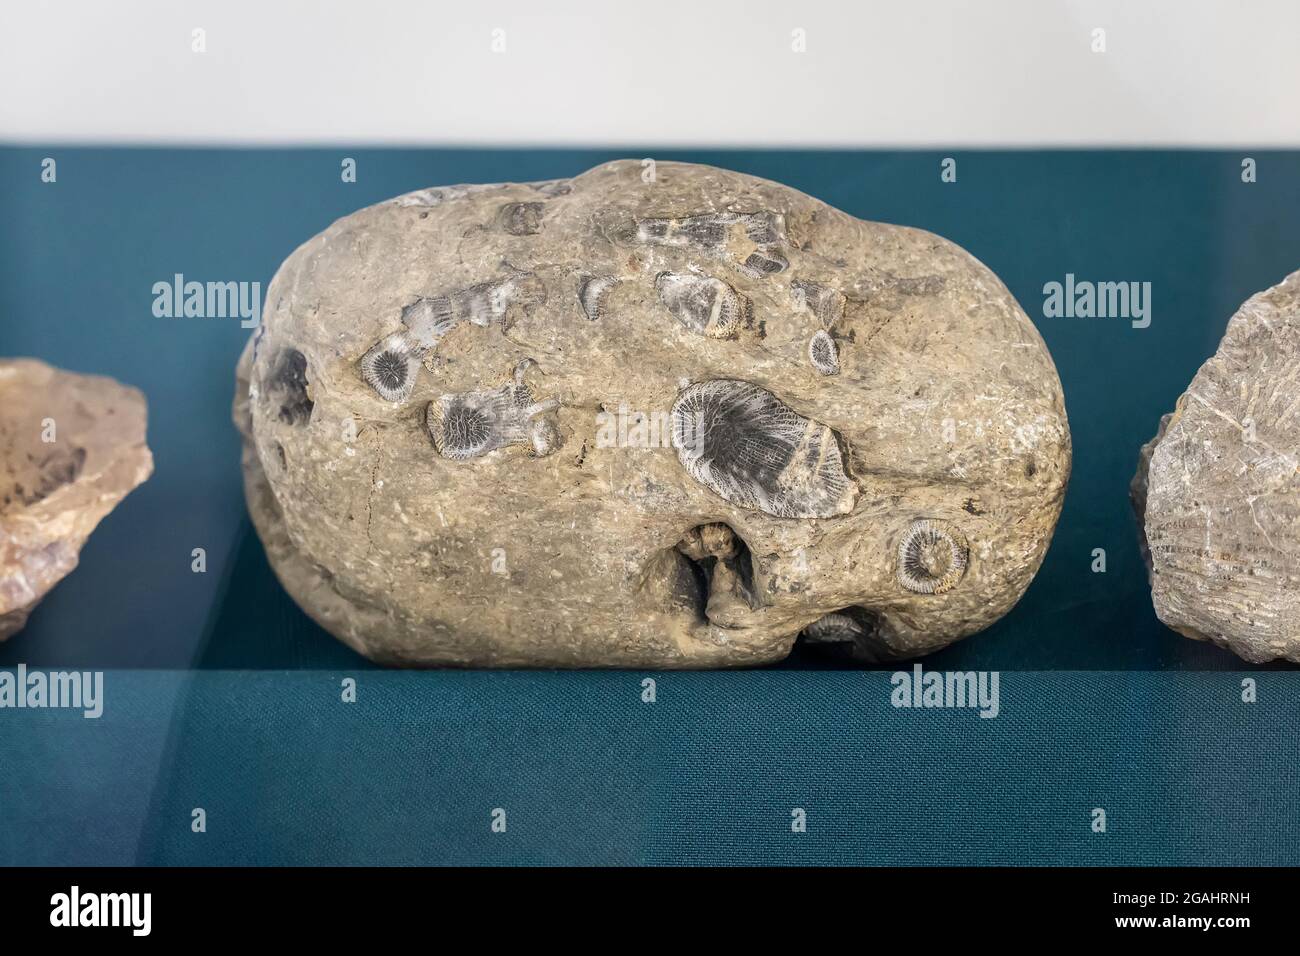 Uralte prähistorische Fossilien. Ein archäologischer Fund. Die ersten Lebewesen auf dem Planeten Erde. Die ersten uralten primitiven Tiere. Stockfoto